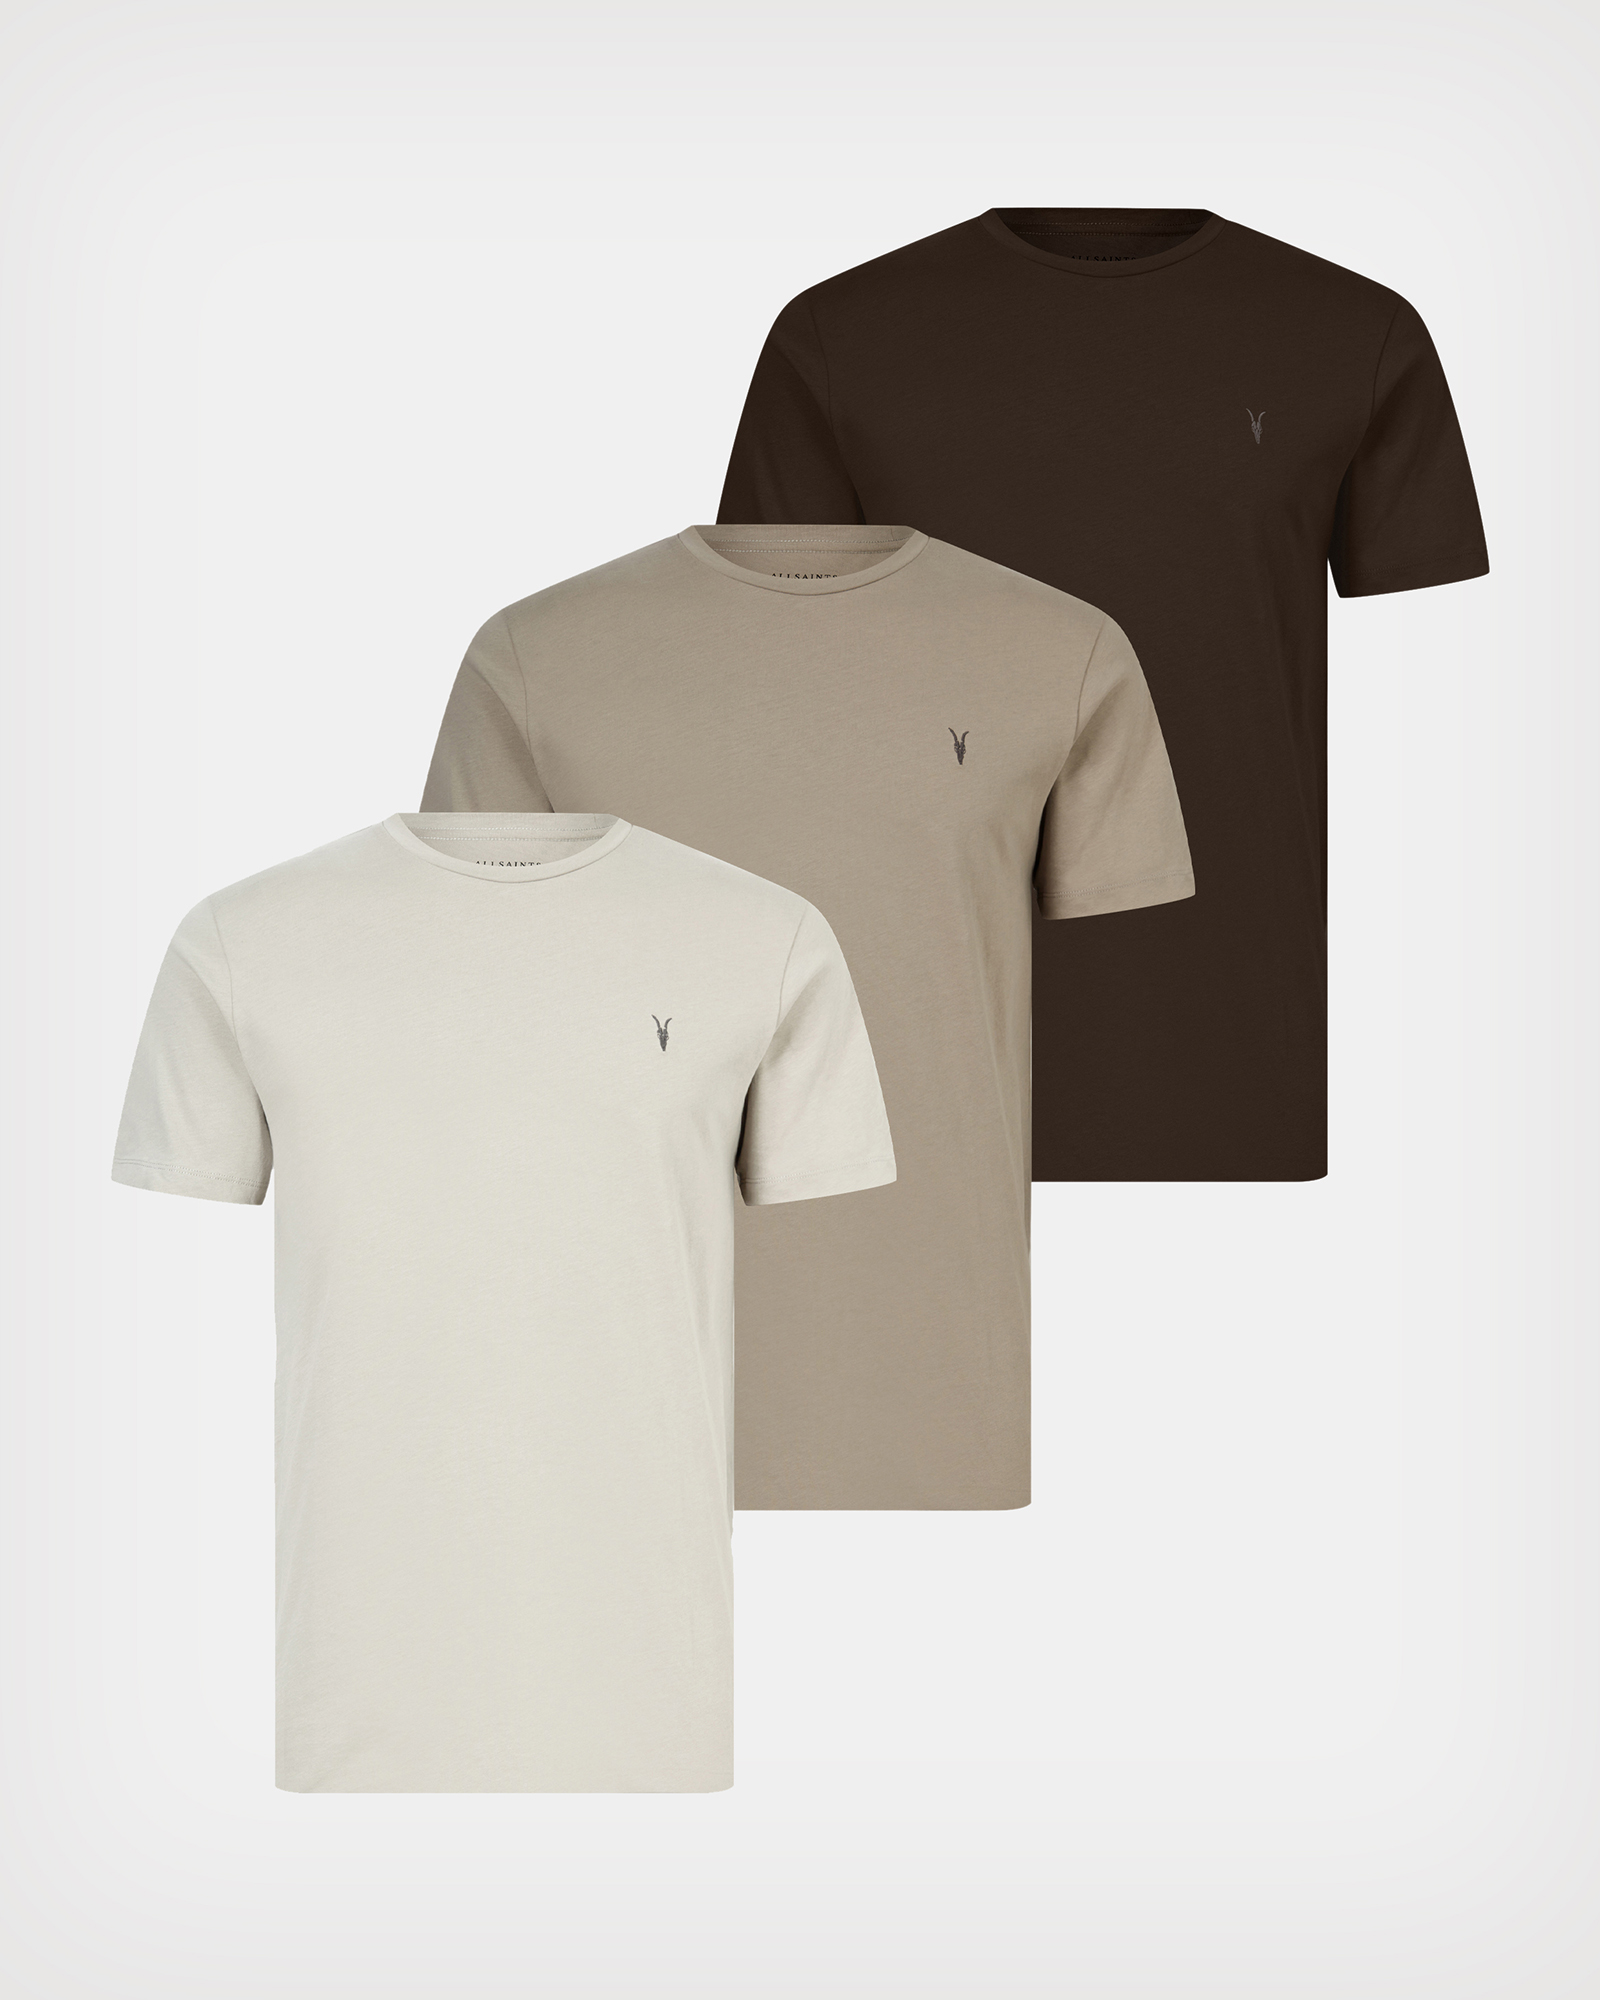 新品未開封 エンノイ ennoy 3PACK Tシャツ 3色 Lサイズ-